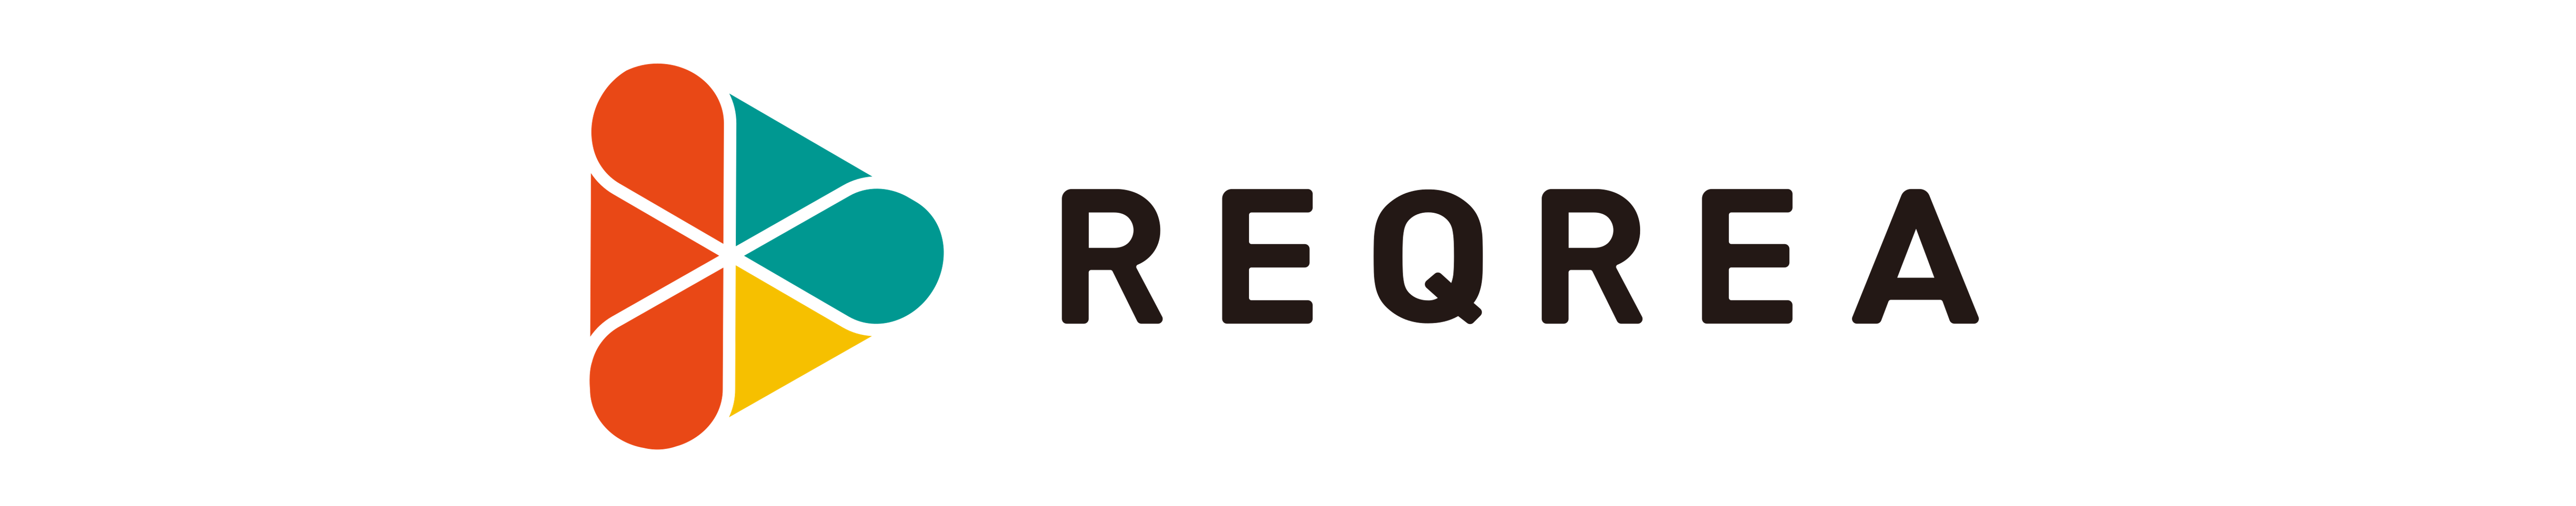 REQREA_logo